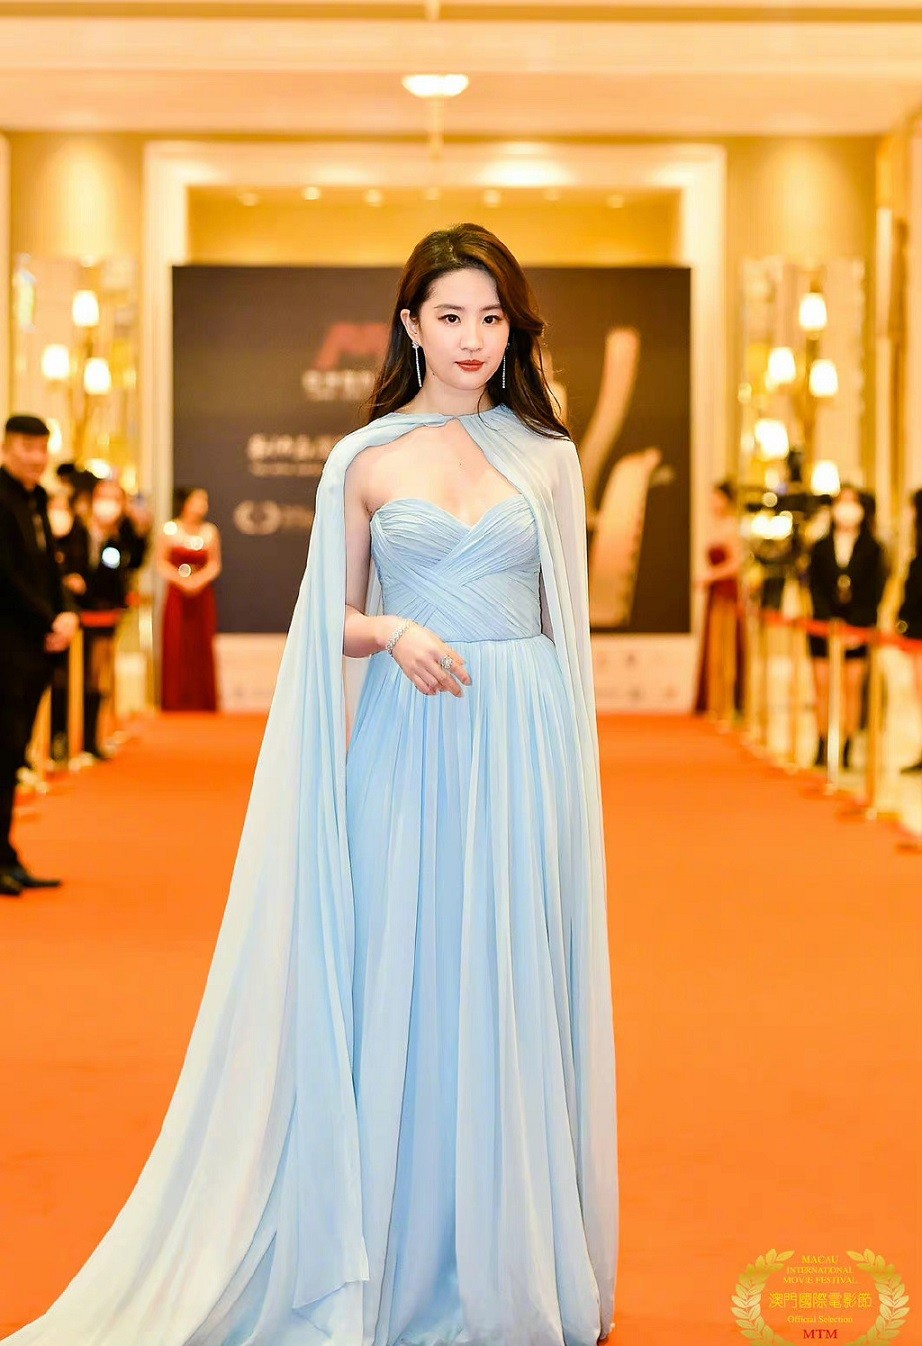 Liên hoan phim Macau: Lưu Diệc Phi đoạt giải; xinh đẹp, thướt tha trên thảm đỏ